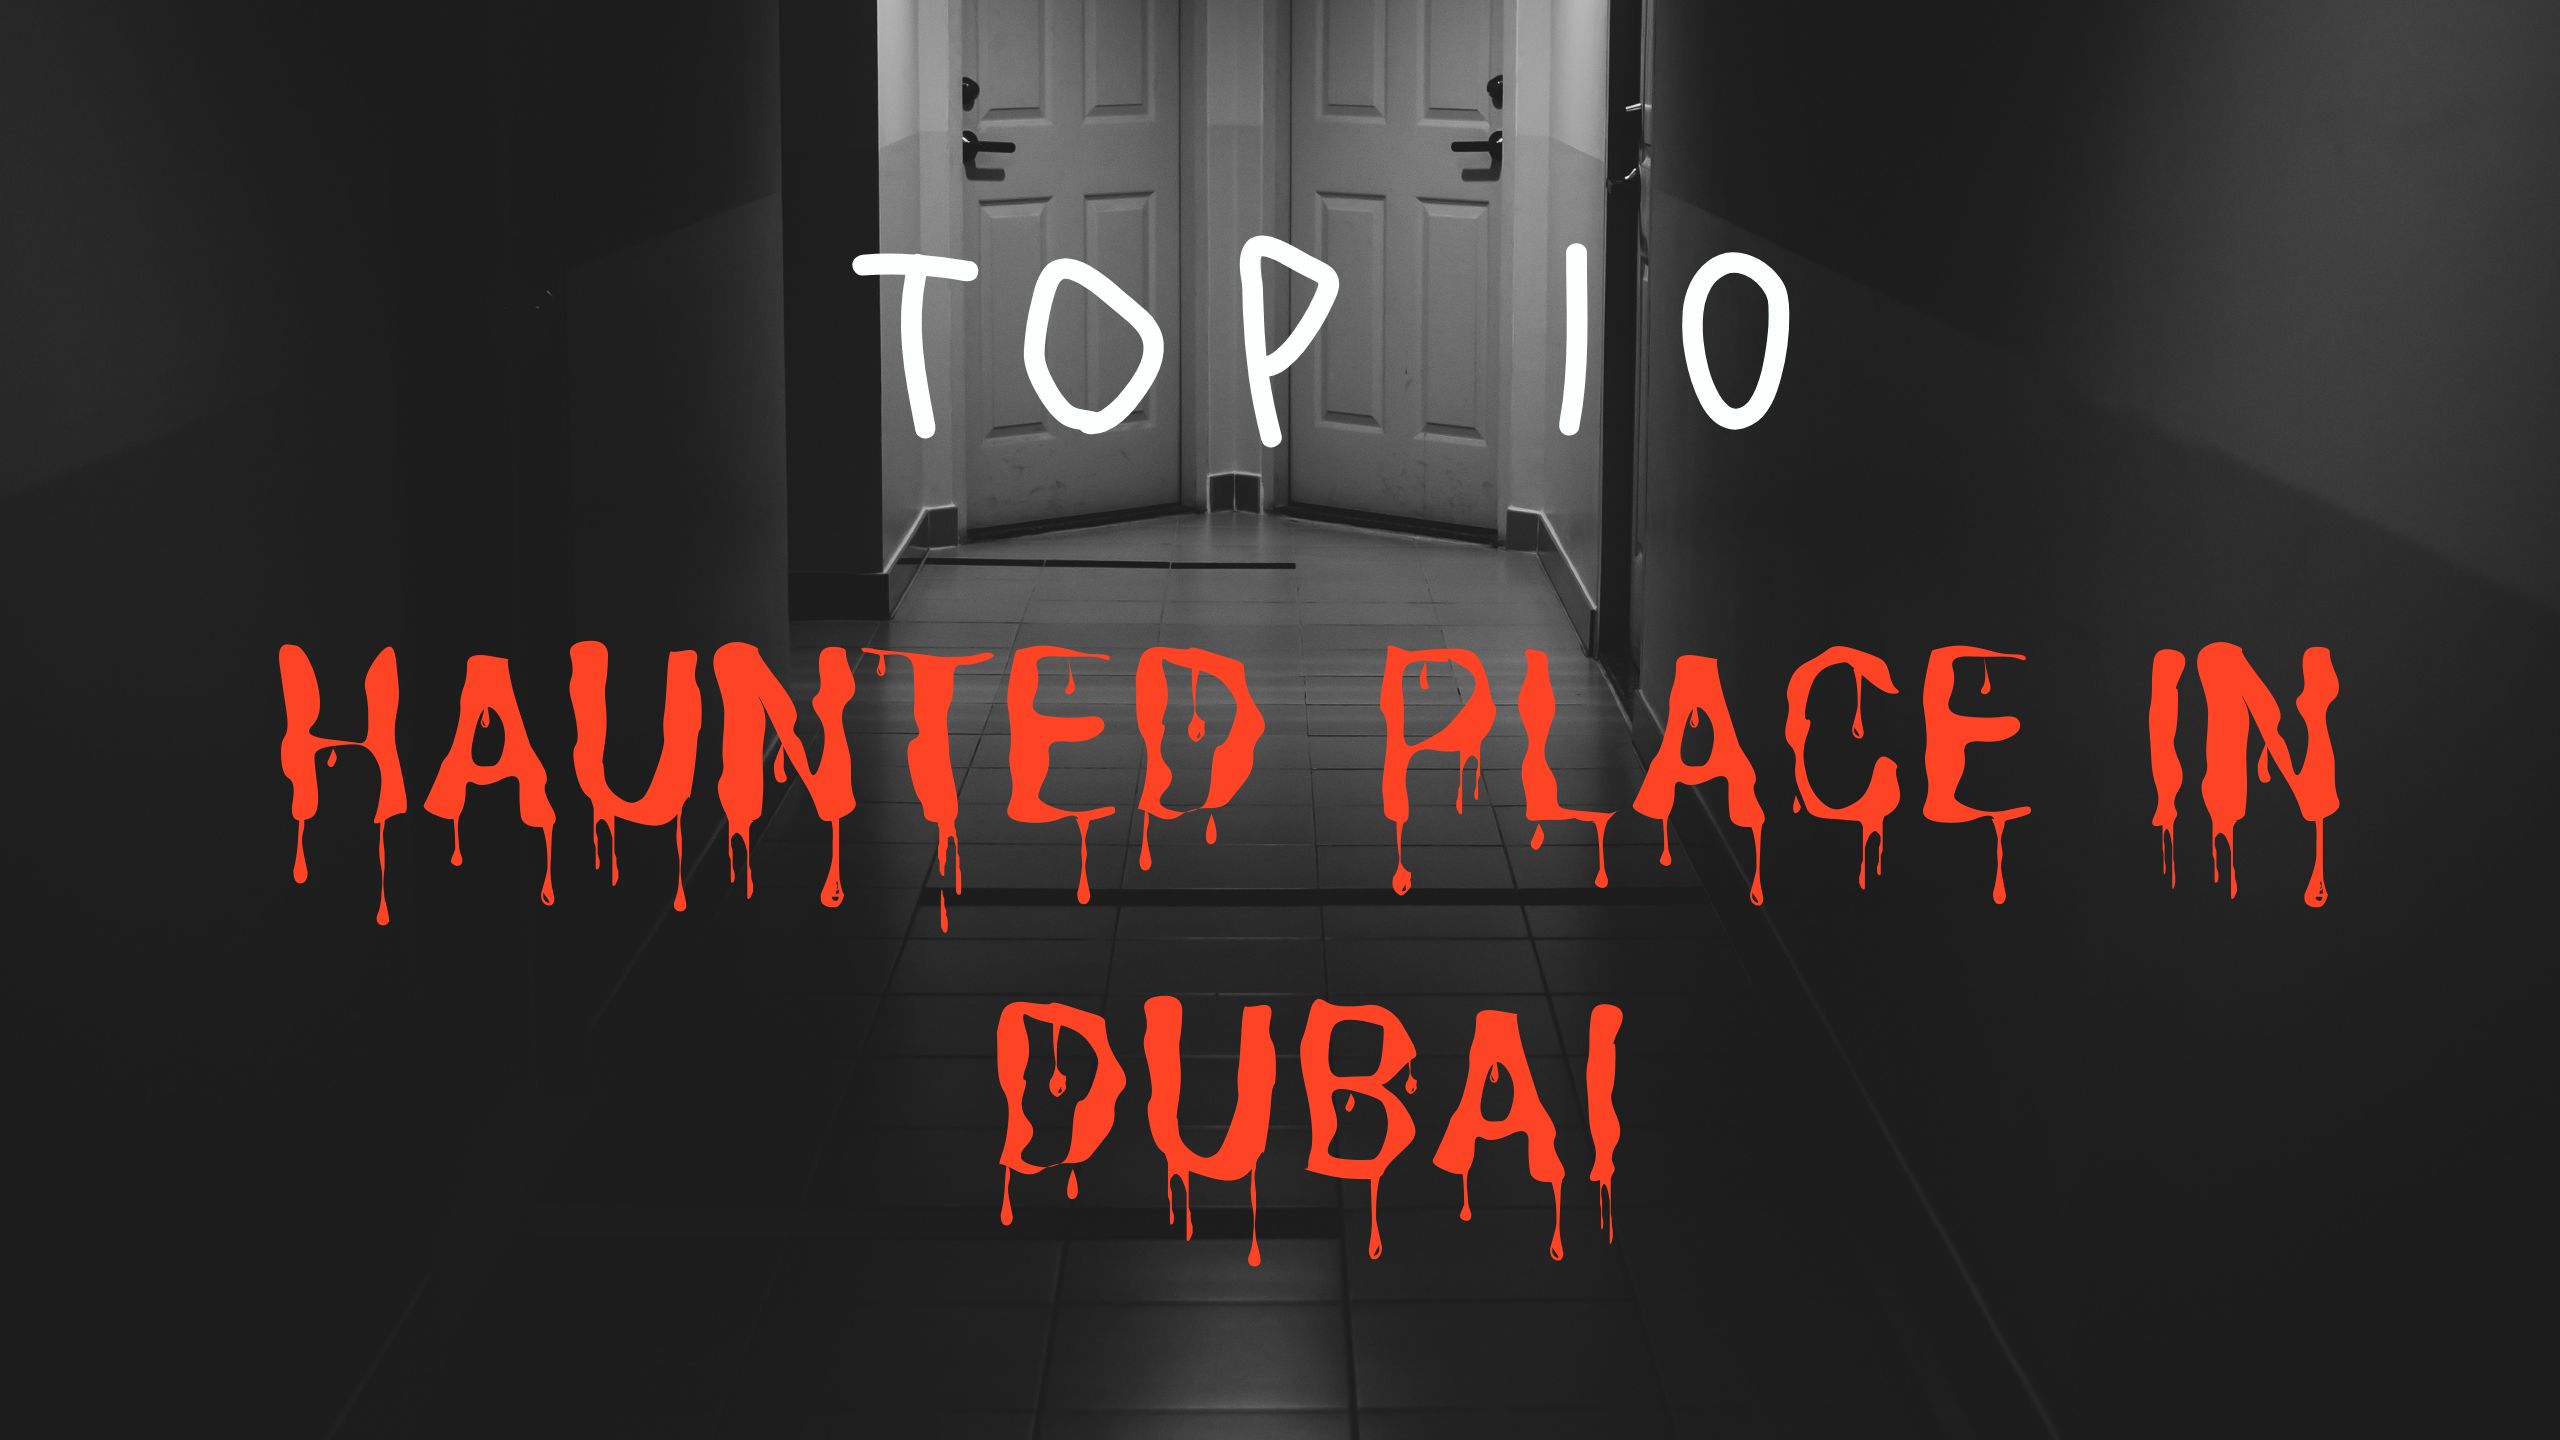 Top 10 haunted places in dubai